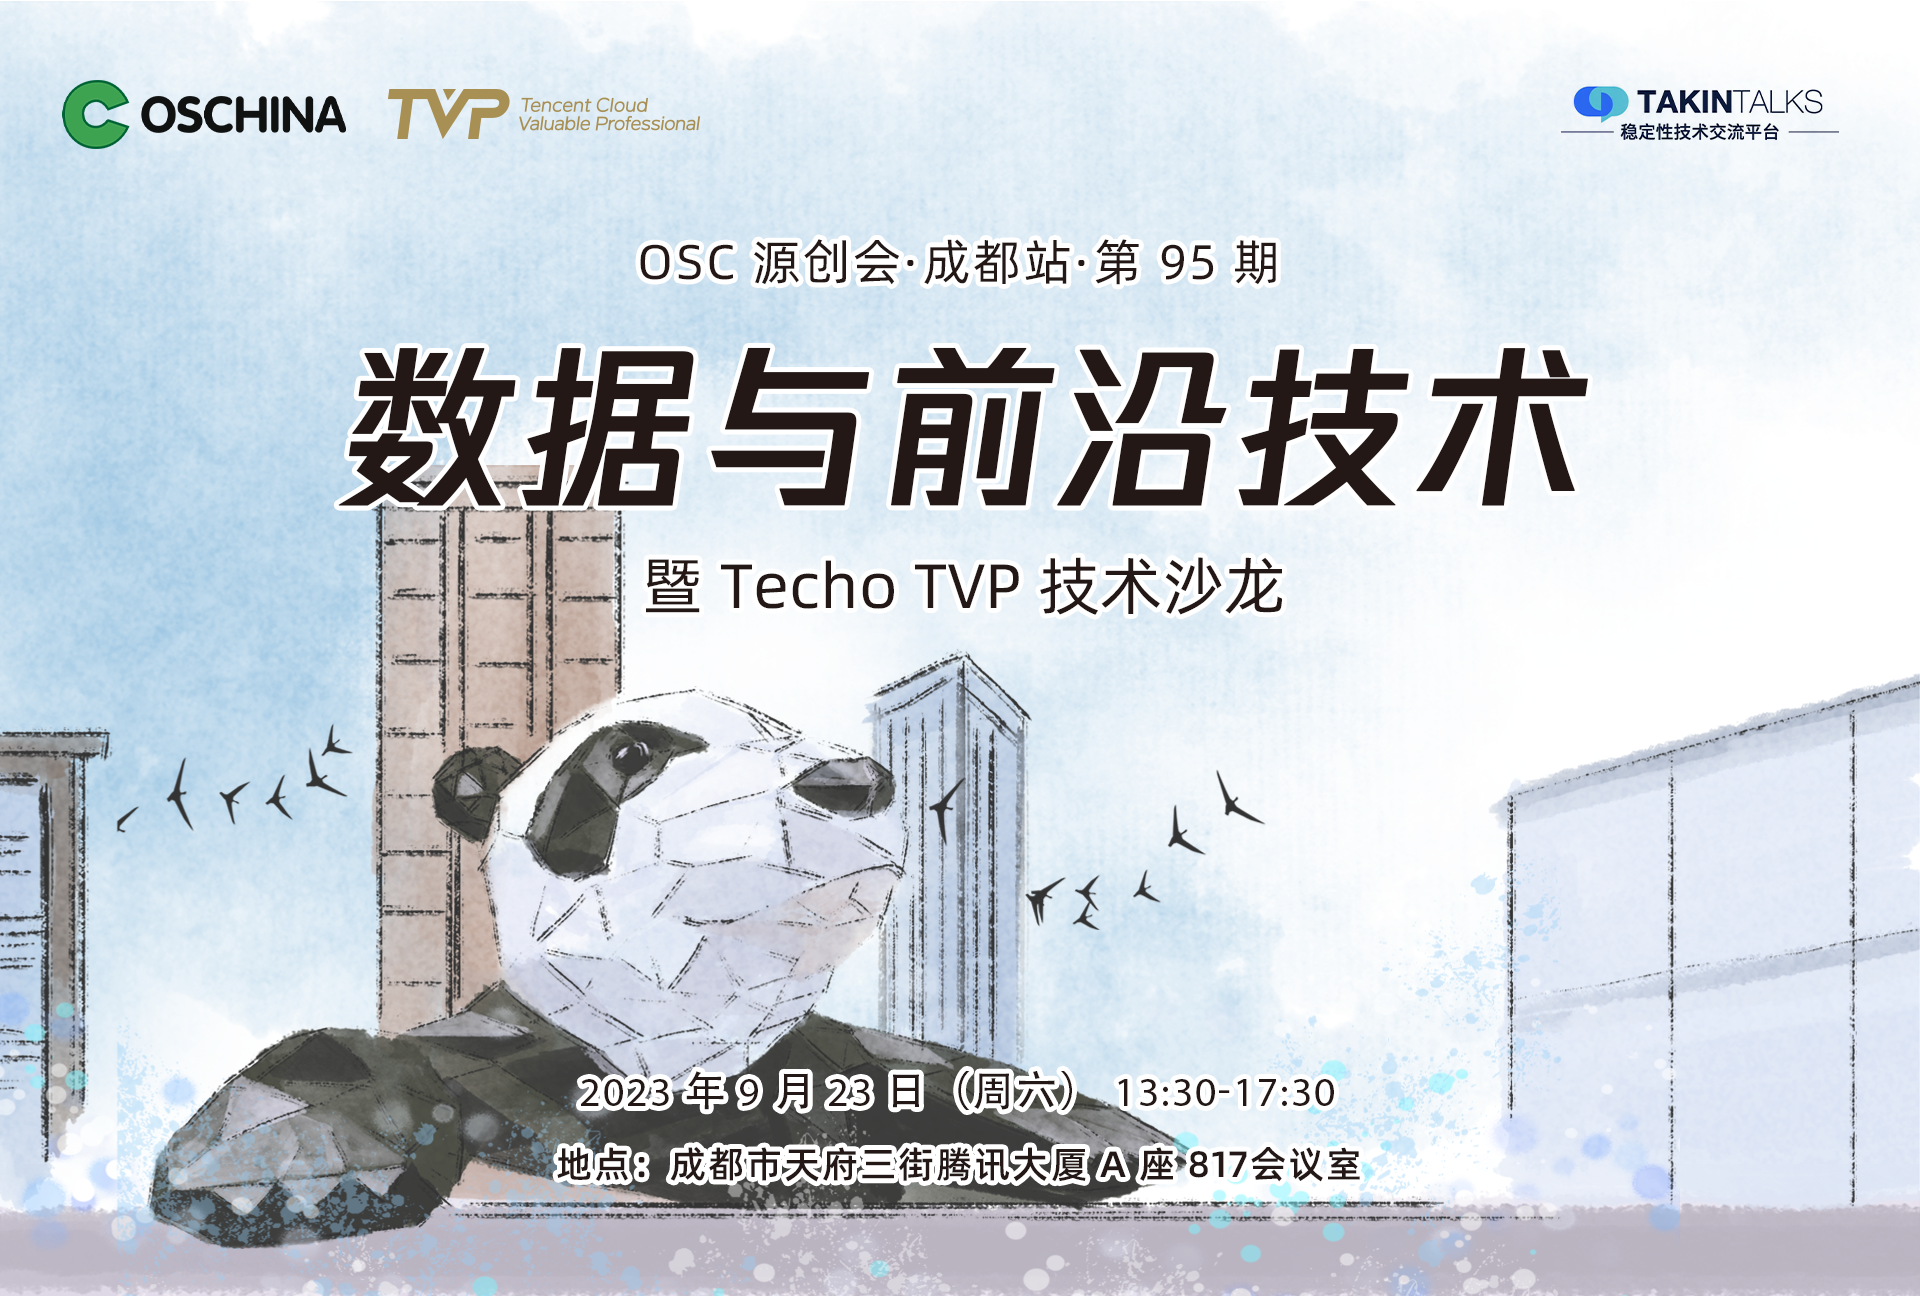 活动推荐：数据与前沿技术——OSC 源创会暨 Techo TVP 技术沙龙